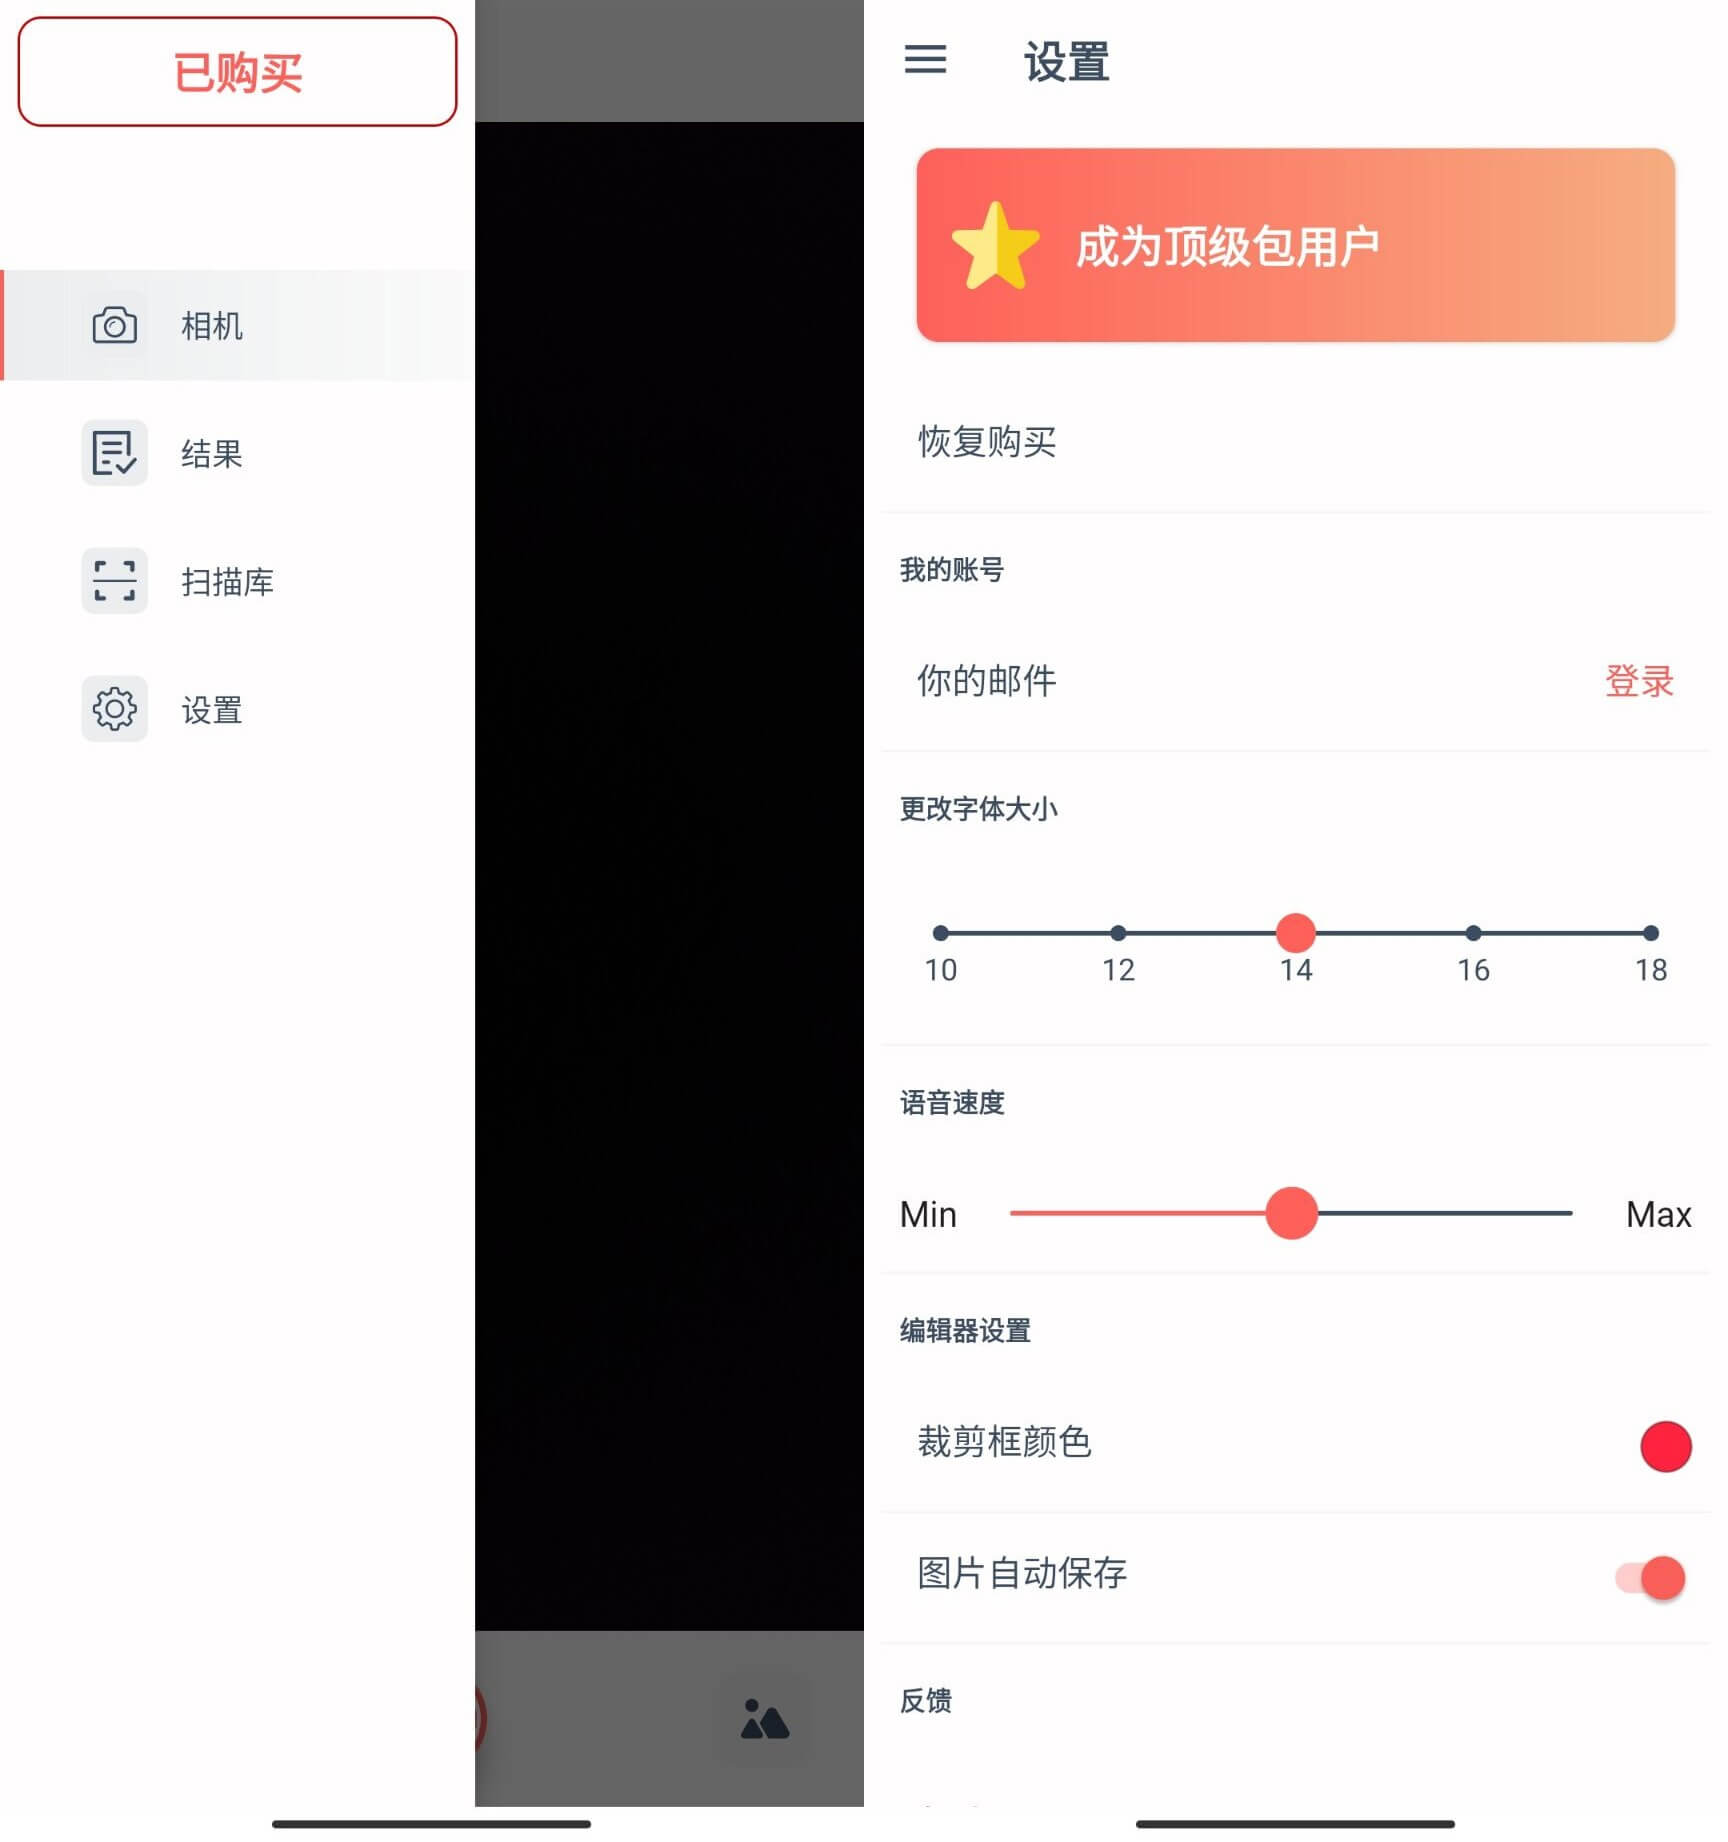 扫描器和译者 v4.2.0 中文高级版 安卓扫描翻译软件